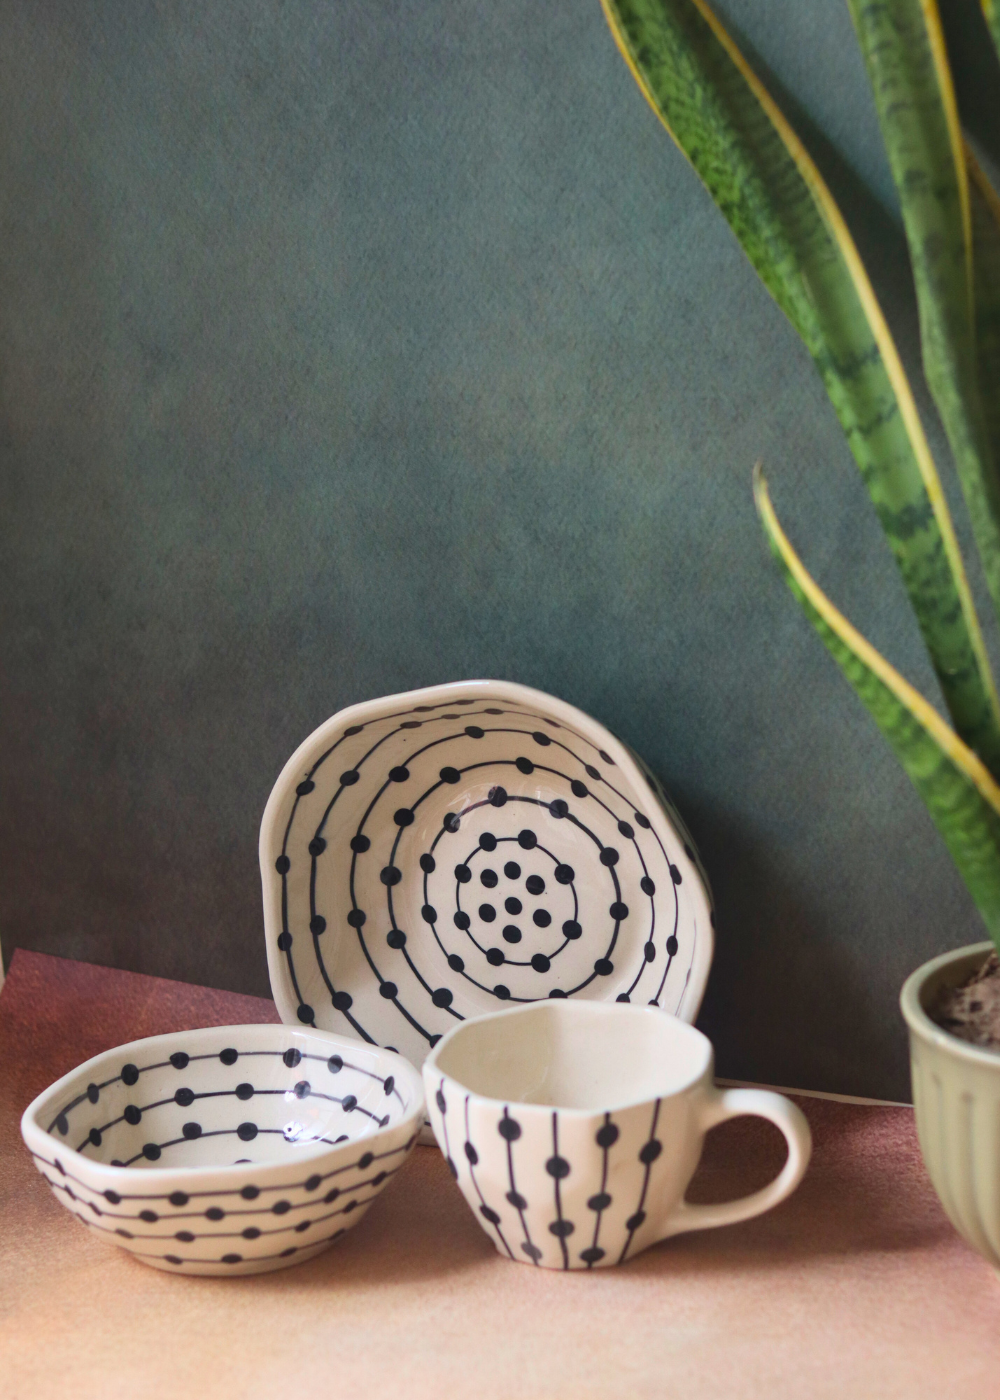 Black dotted coffee mug & bowls